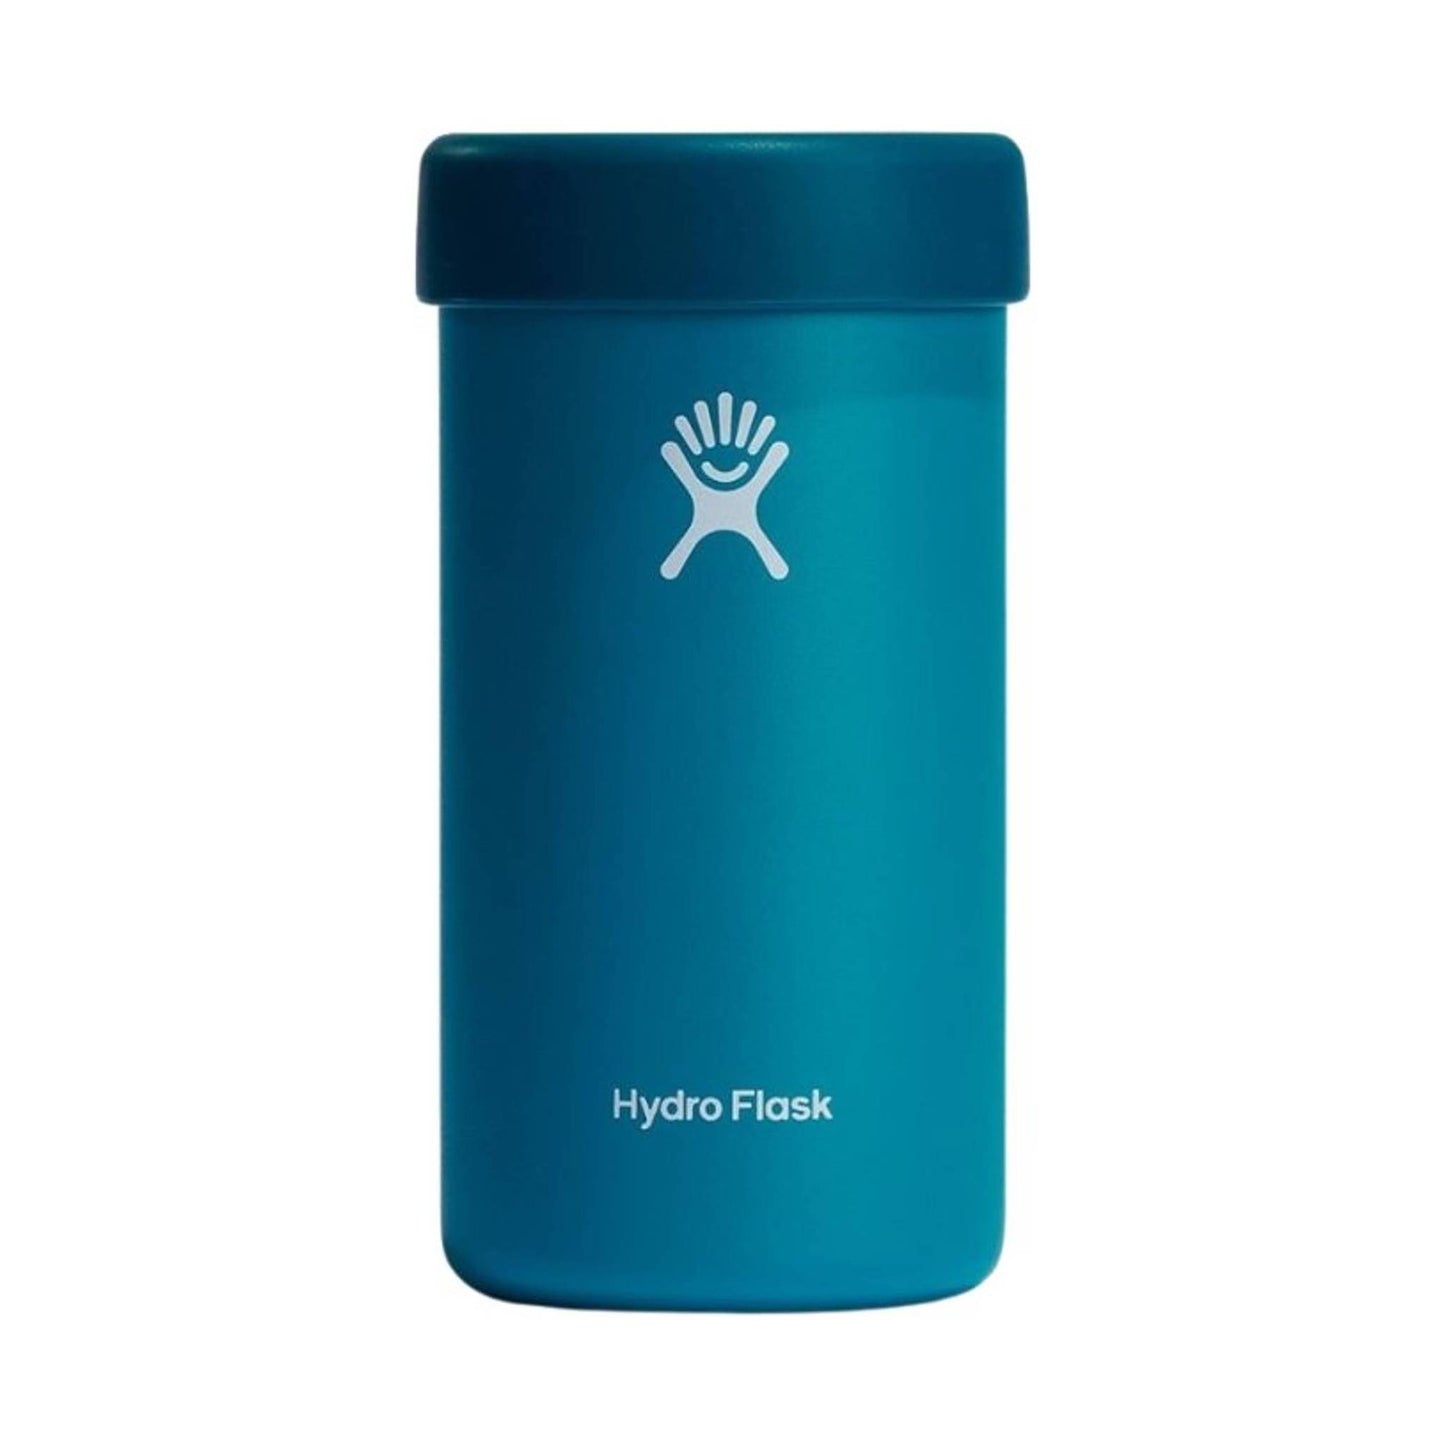 Hydro Flask 16 oz Tallboy Cooler Cup - Laguna